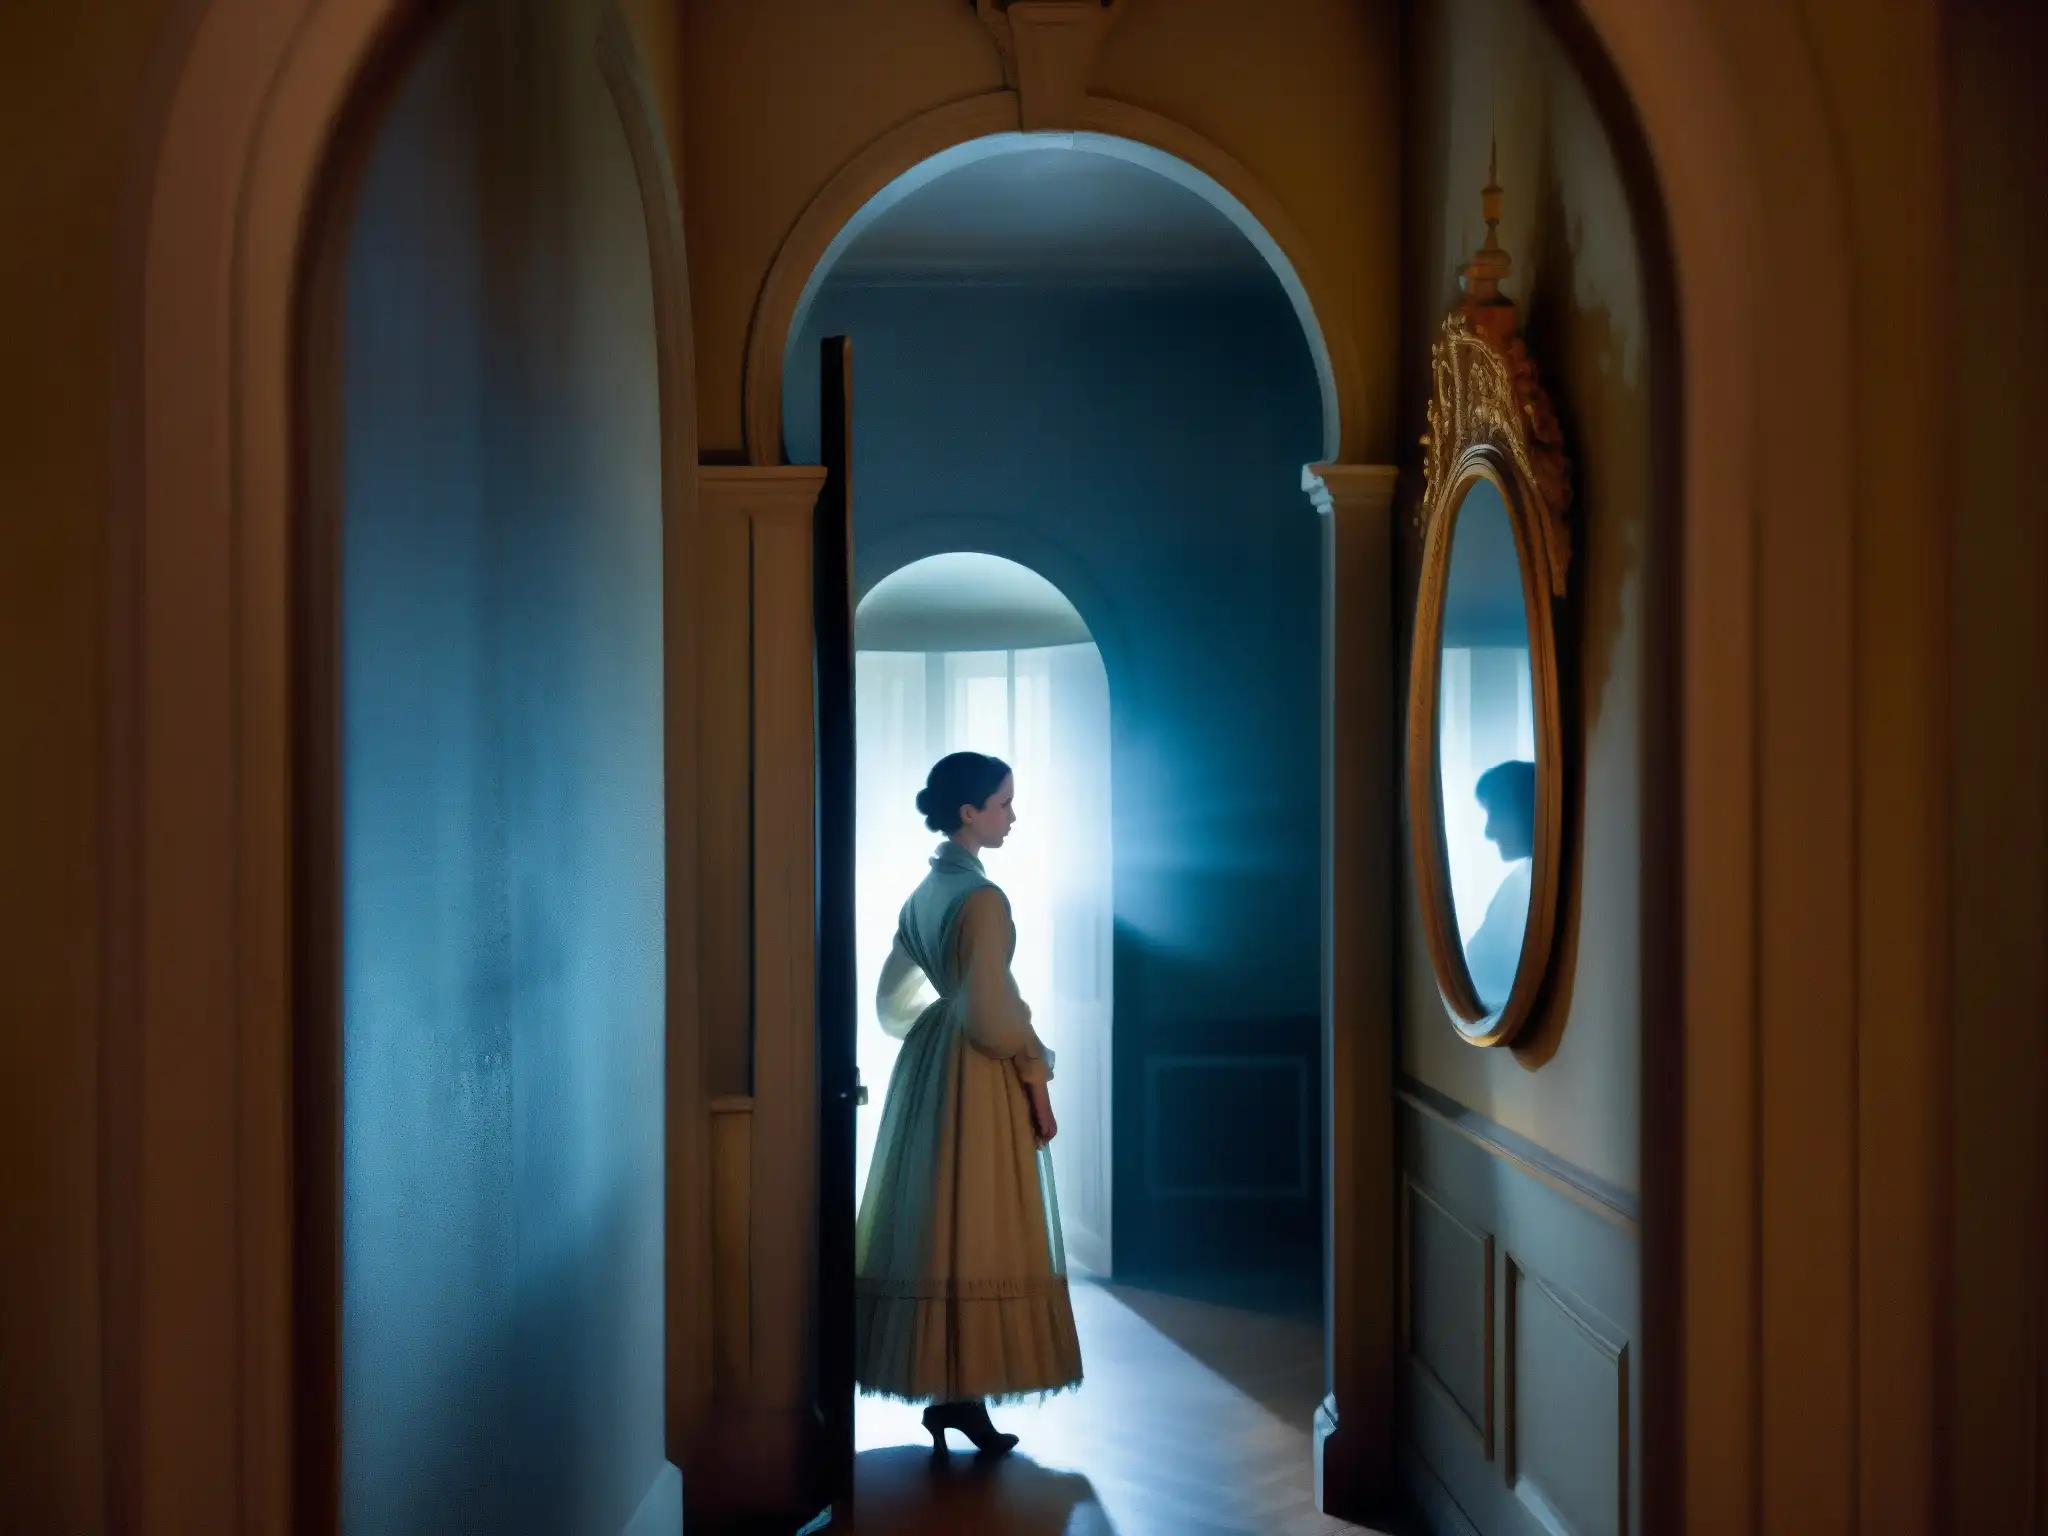 Un fantasma vestido de época flota frente a los espejos en una casa de Quito, creando un aura misteriosa y sobrenatural